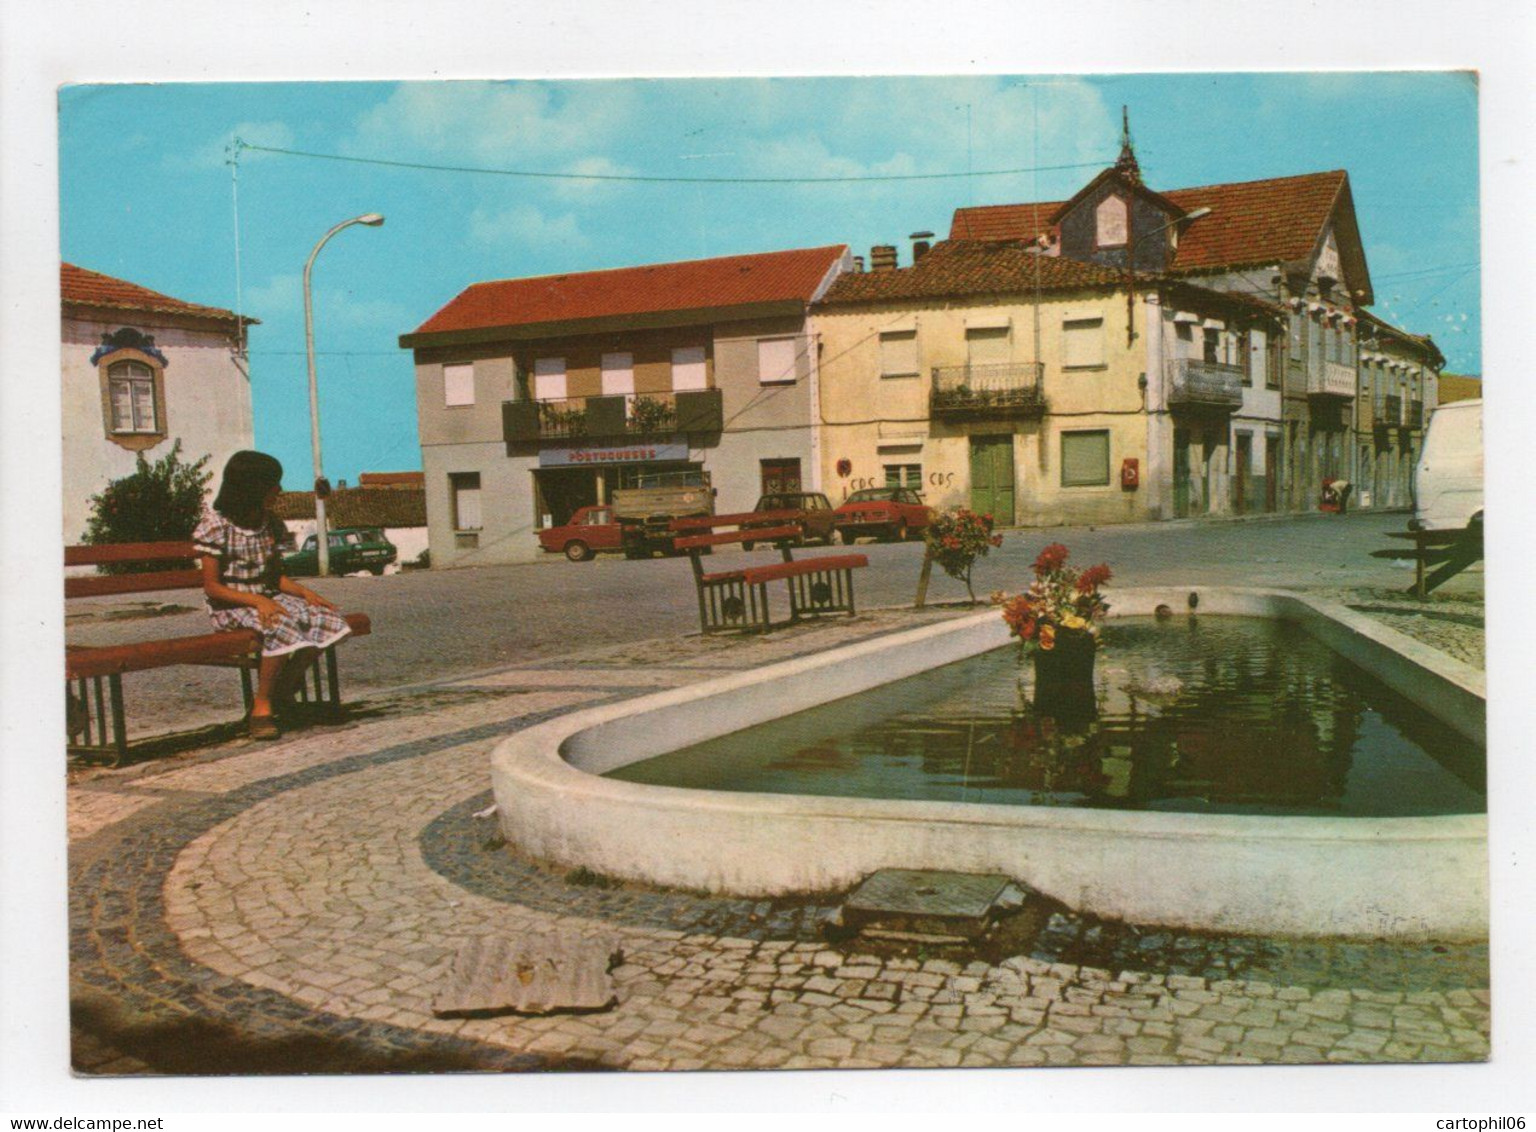 - CPM VILA NOVA DE FOSCOA (Vila Nova De Foz Côa / Portugal) - Centro Da Vila 1982 - - Guarda